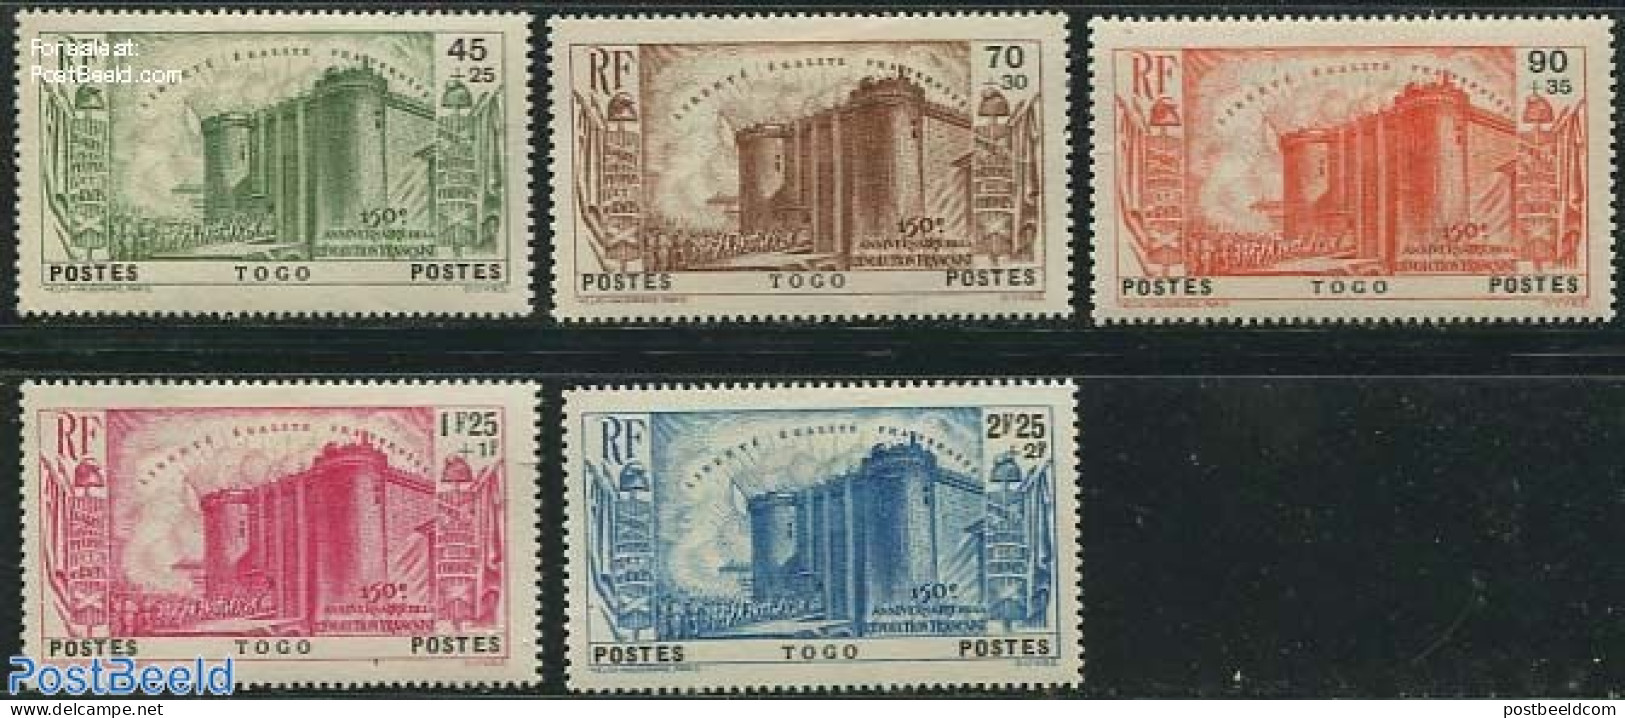 Togo 1939 French Revolution 5v, Unused (hinged), History - History - Art - Castles & Fortifications - Castillos